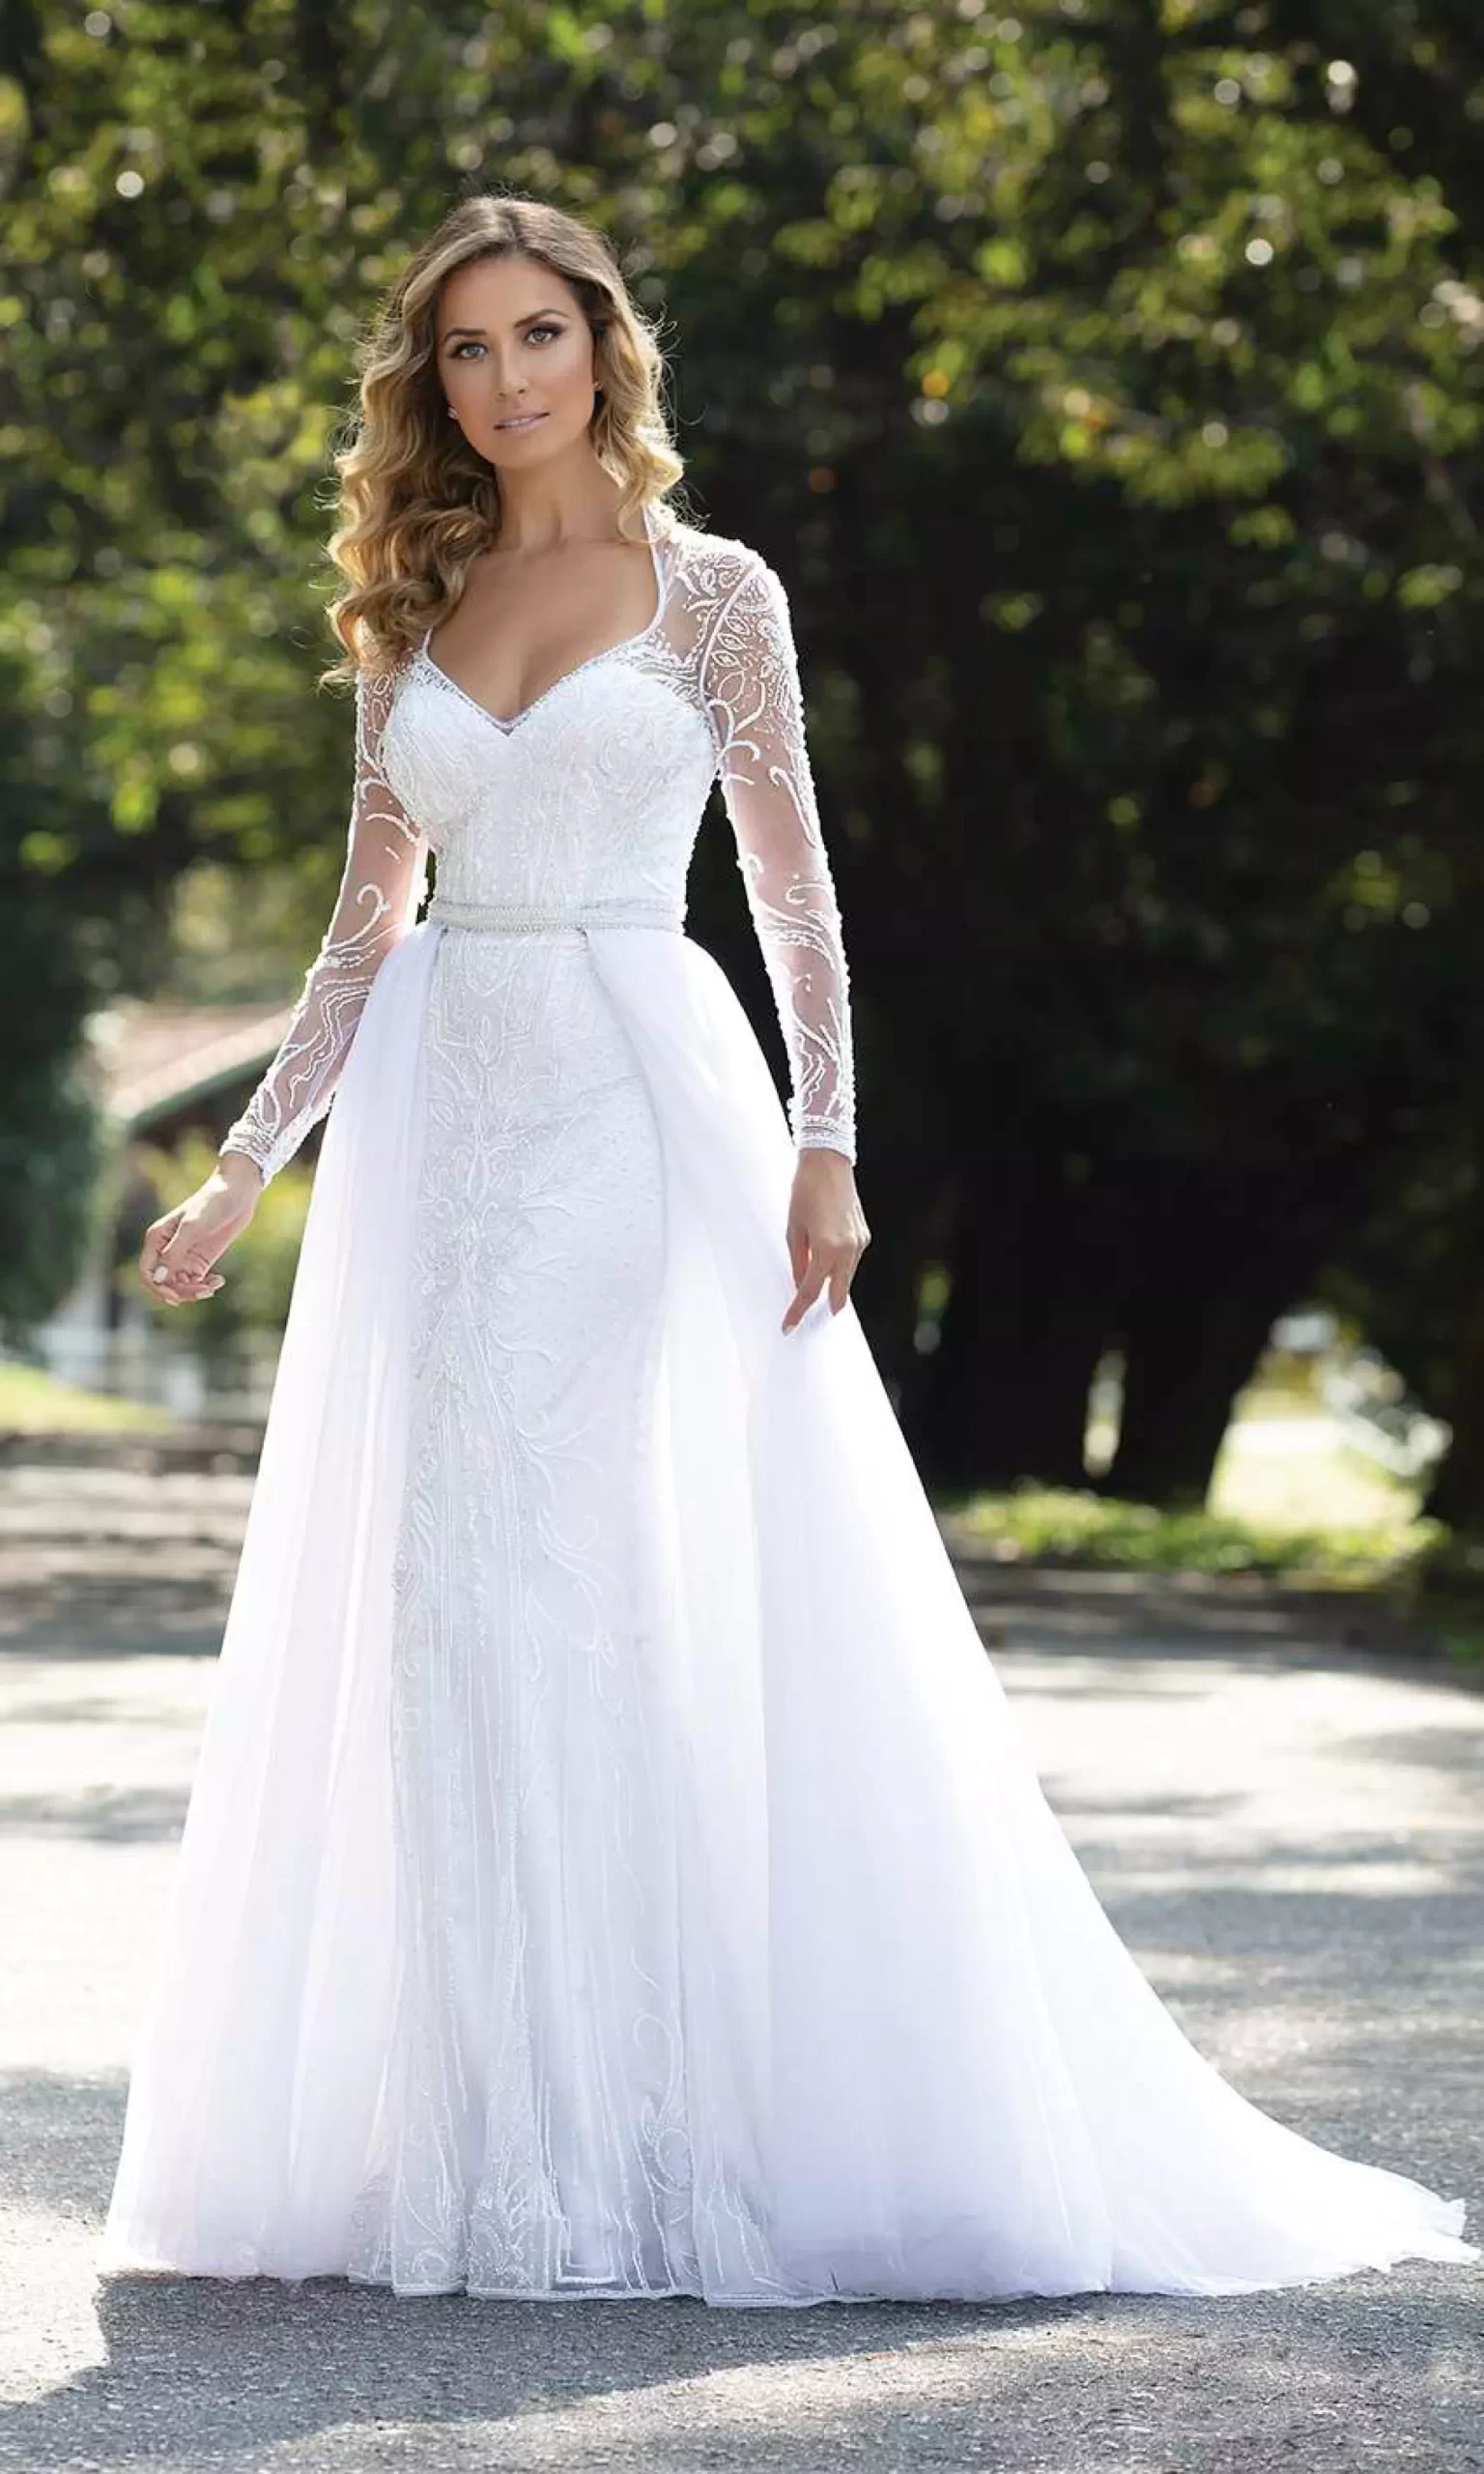 Mulher usando um vestido de noiva branco evasê com um decote v.